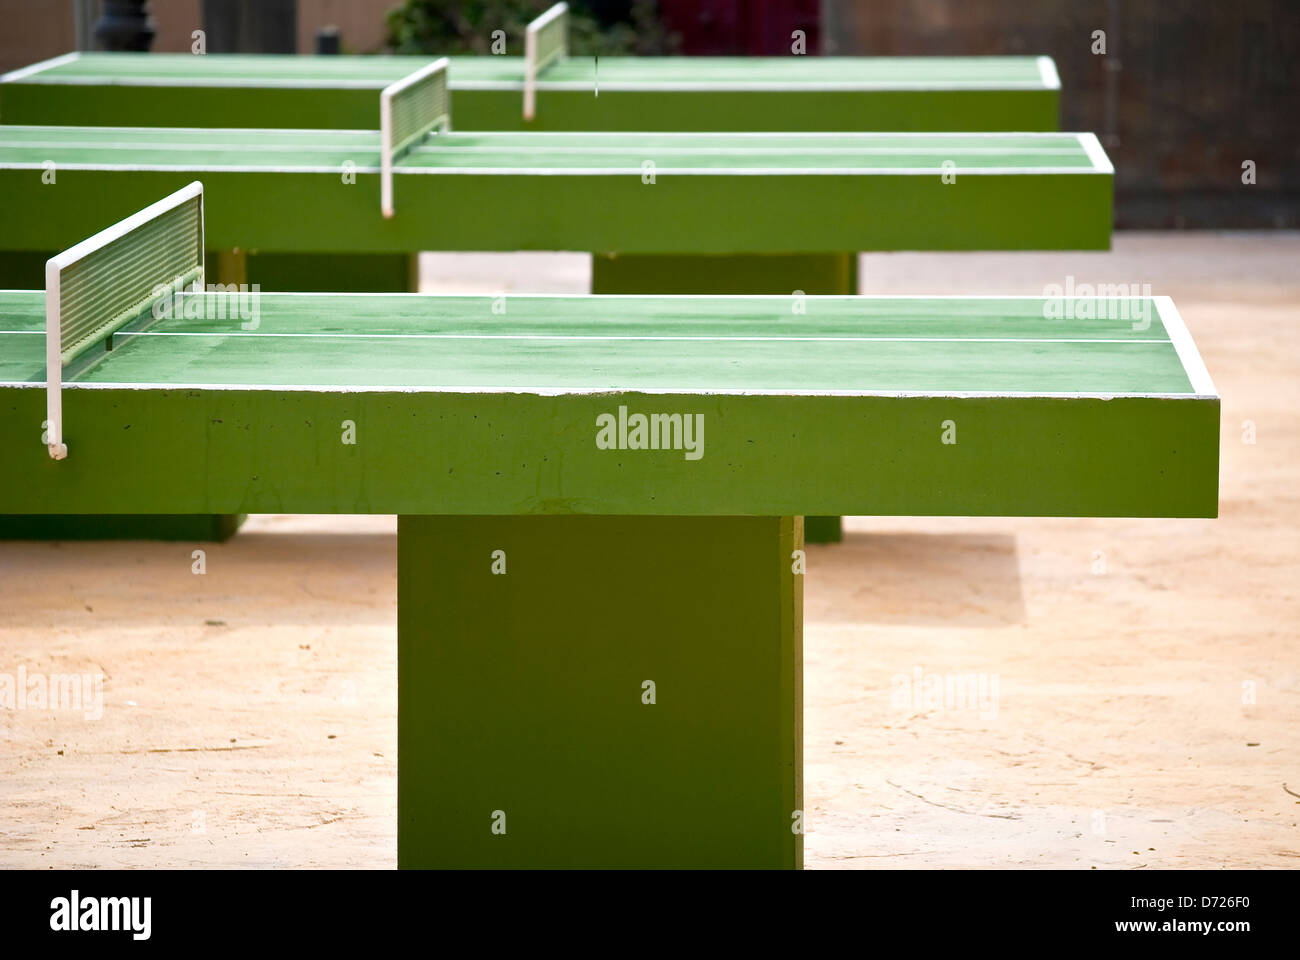 Mesas de ping-pong Stock Photo